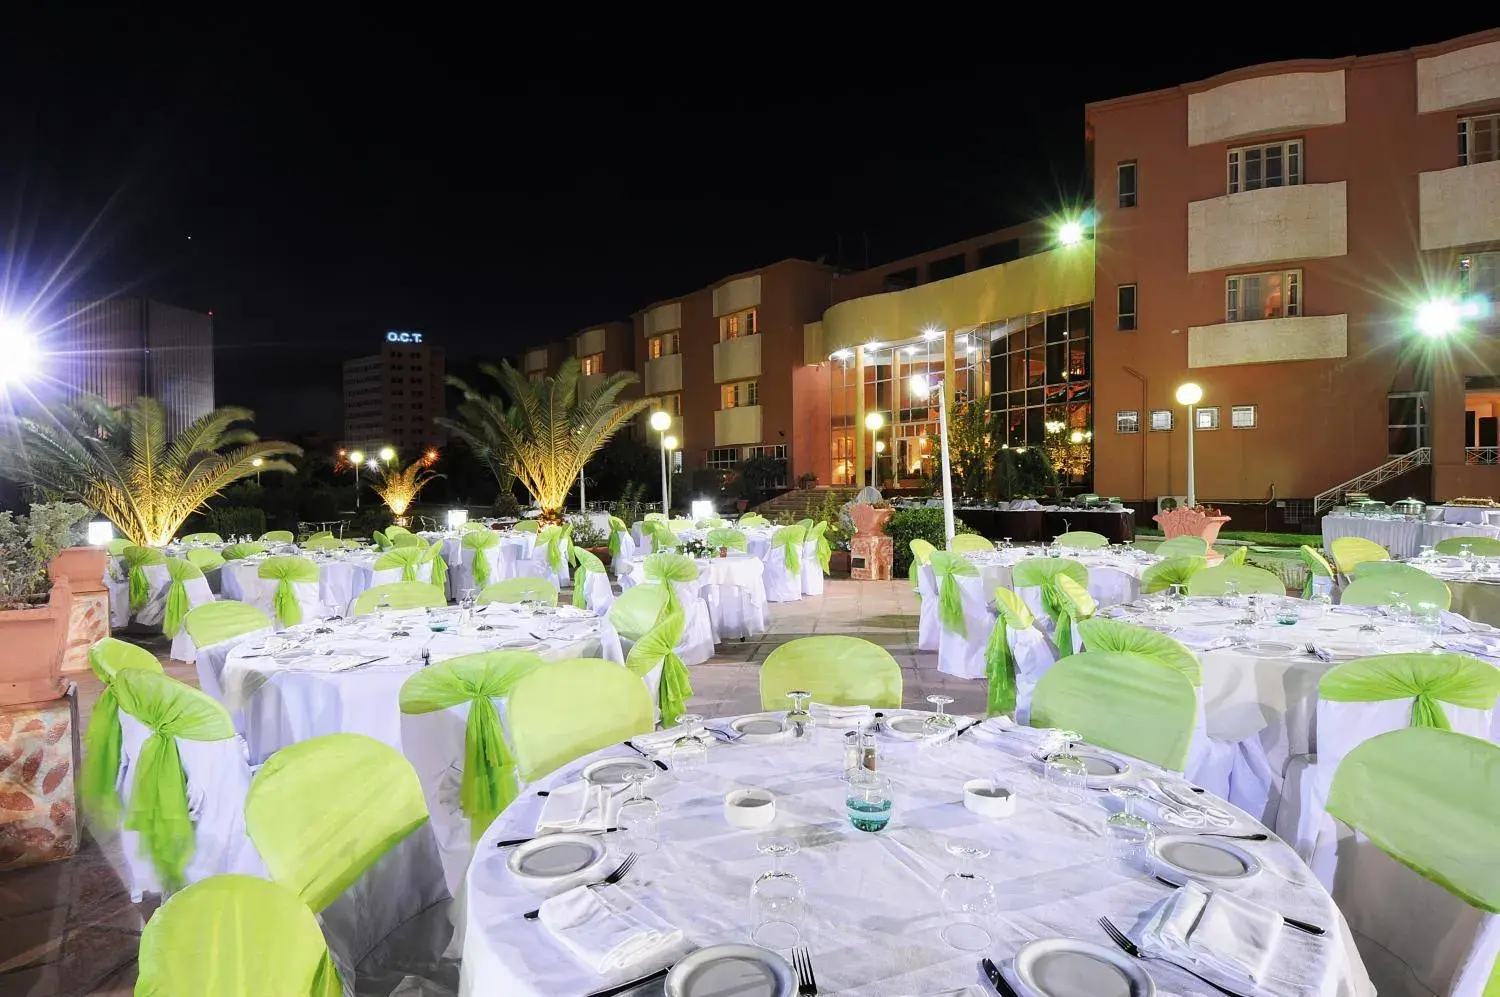 Banquet/Function facilities, Banquet Facilities in Hotel du Parc